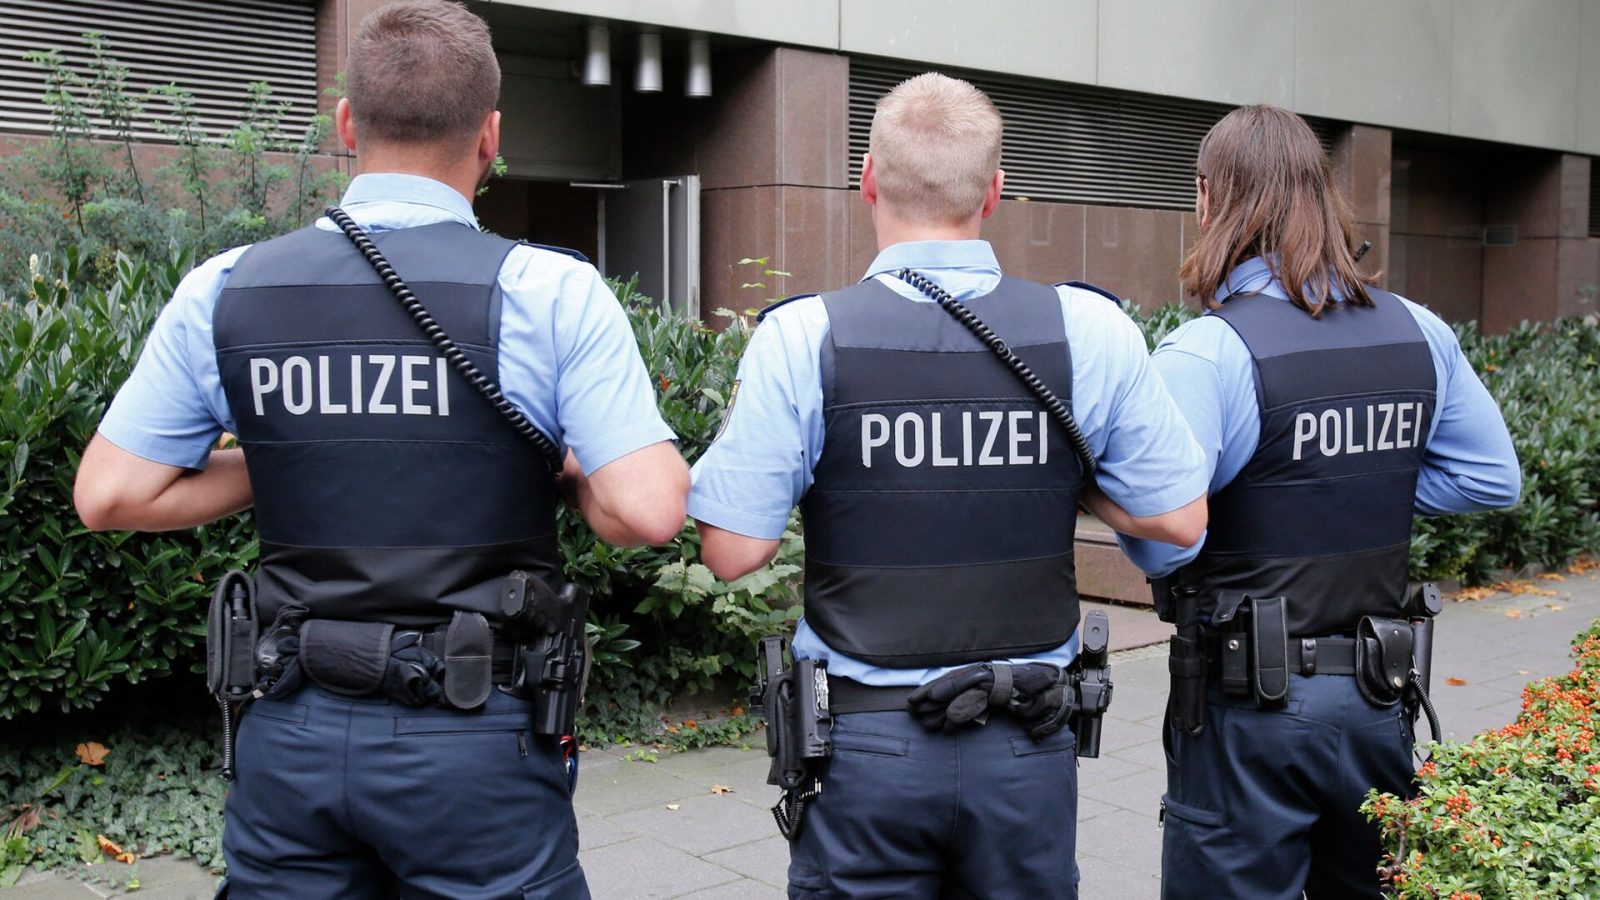 Die Zeit: среди 25 задержанных в Германии по подозрению в госизмене есть гражданка России